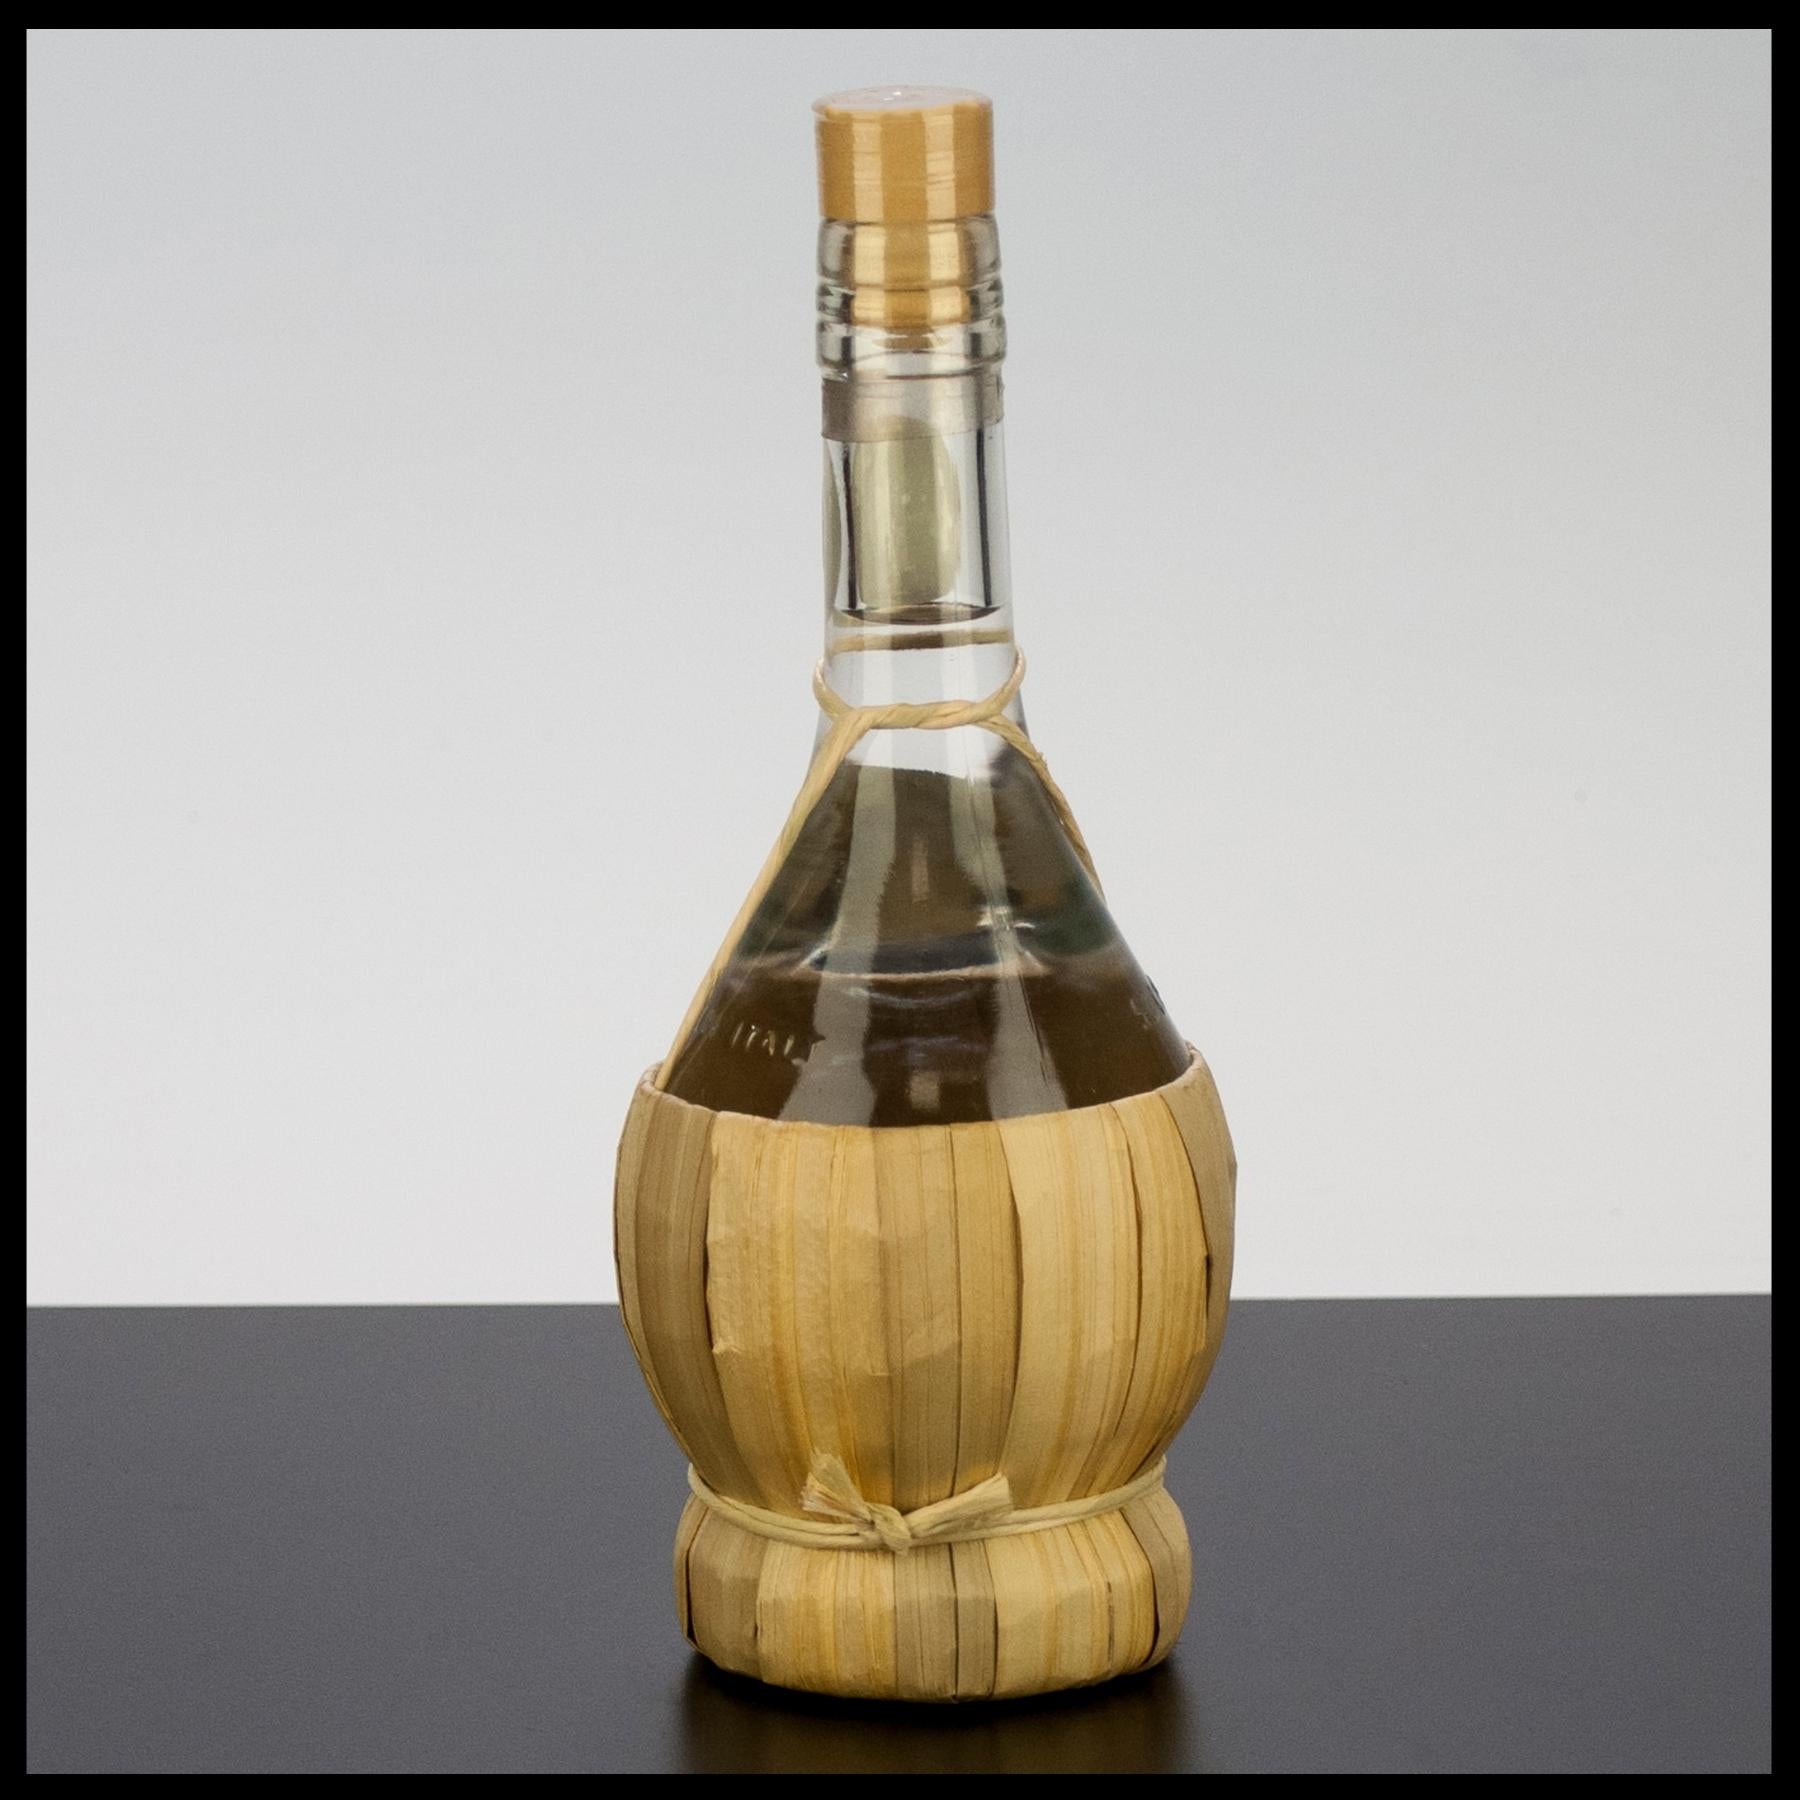 Stelzl Graspa Chardonnay 0,5L - 37,5% Vol. - Trinklusiv